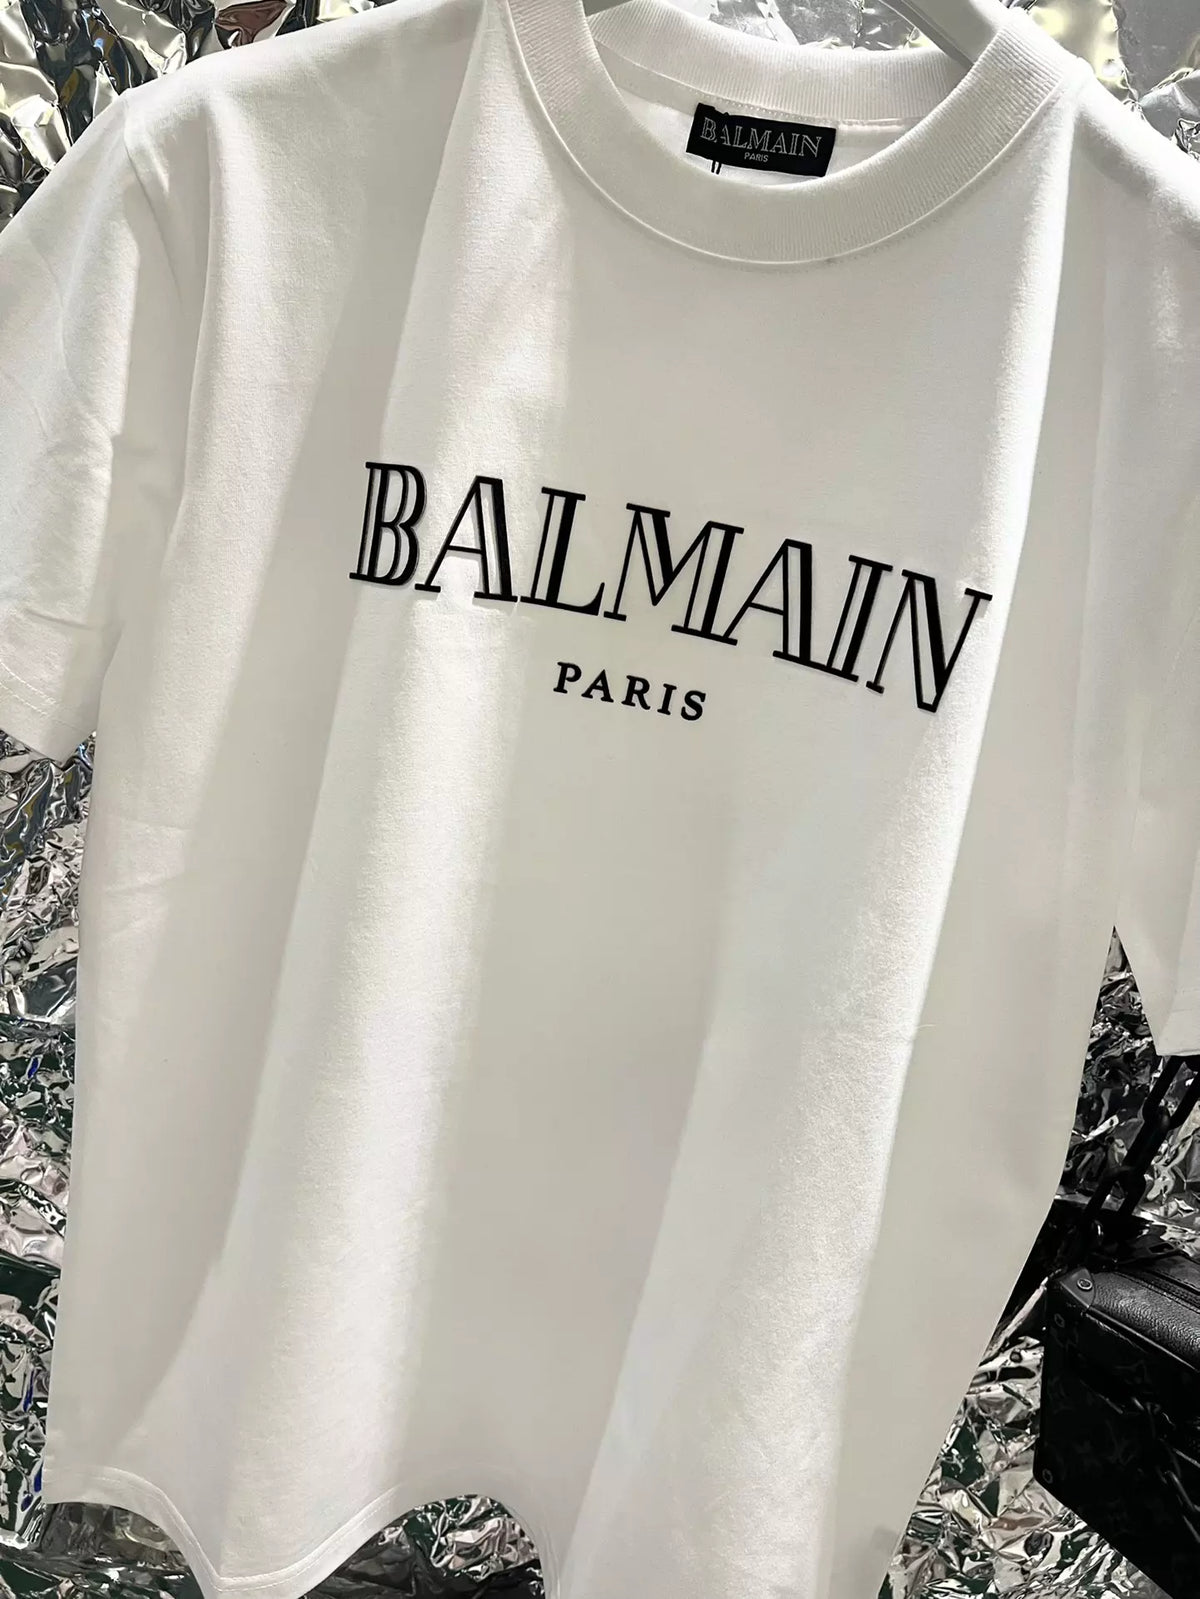 Balmain Paris Estampa de Logo - Branca